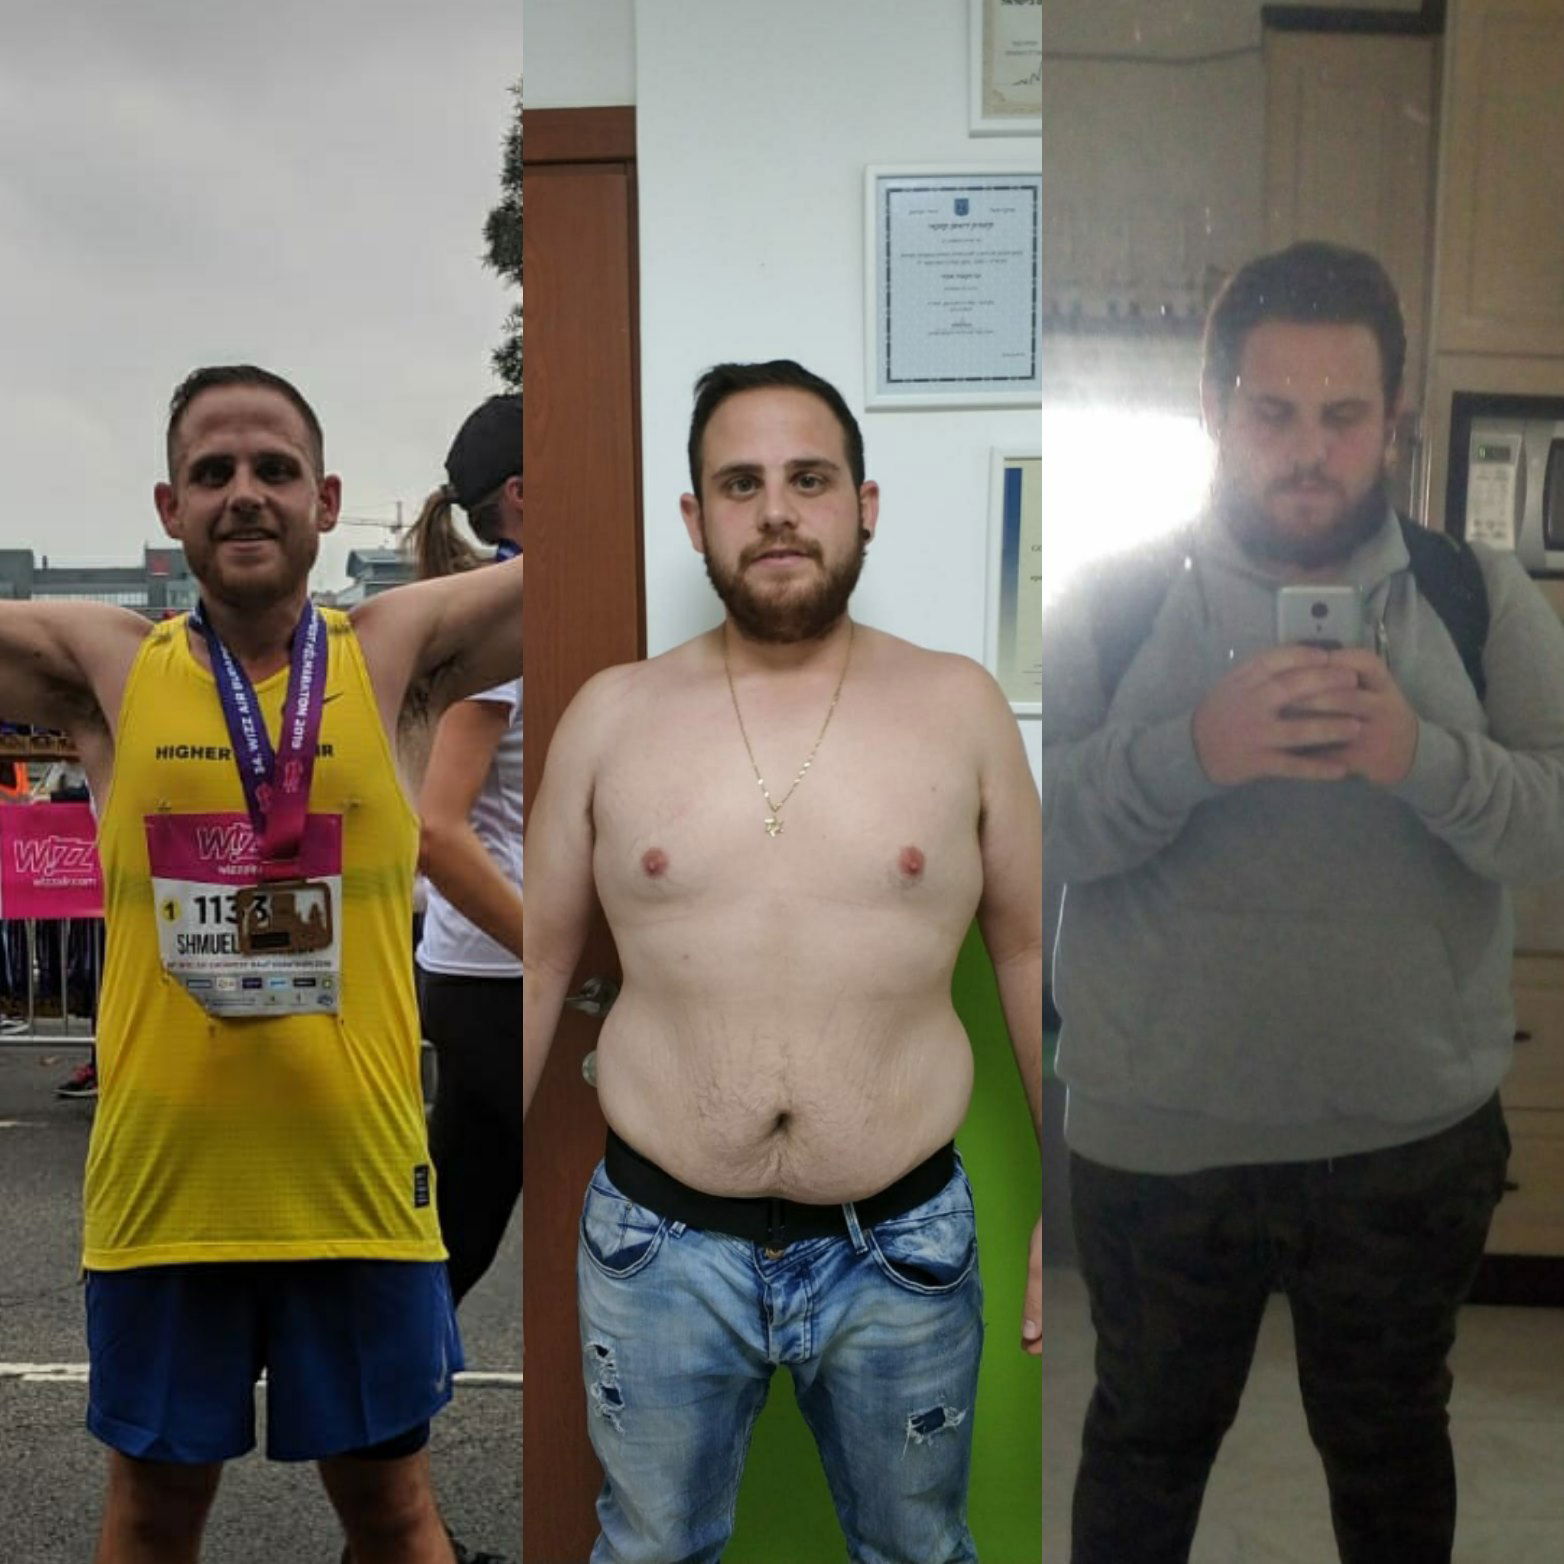 סיפור ההצלחה של שמואל - תהליך ירידה במשקל שהגיע עד מרתון בודפשט